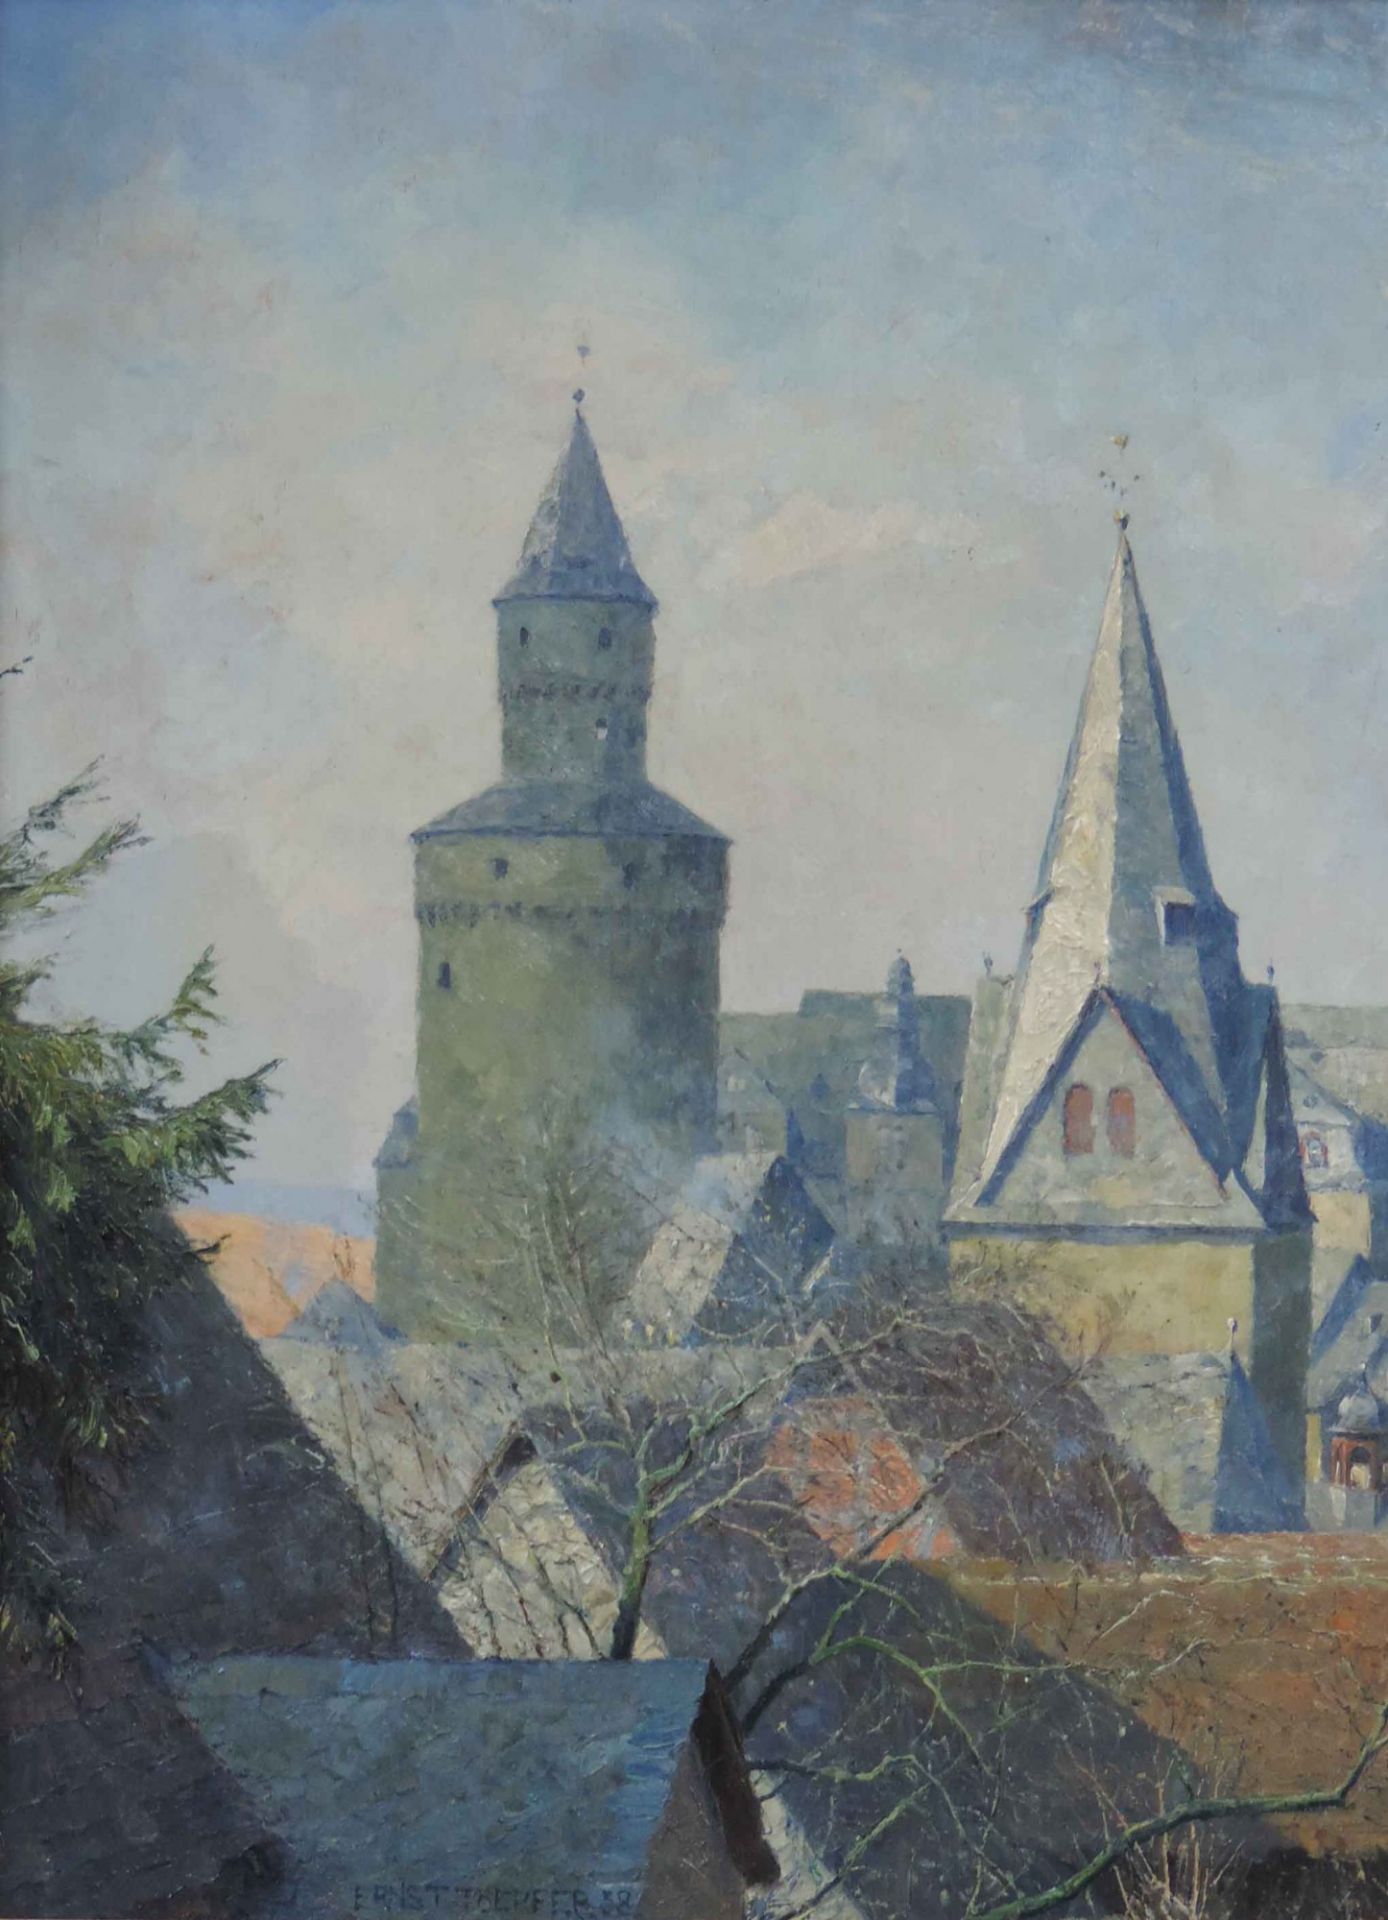 Ernst TOEPFER (1877 - 1955). Idstein im Taunus. Altstadt mit Hexenturm, 193860 cm x 70 cm. - Bild 6 aus 10